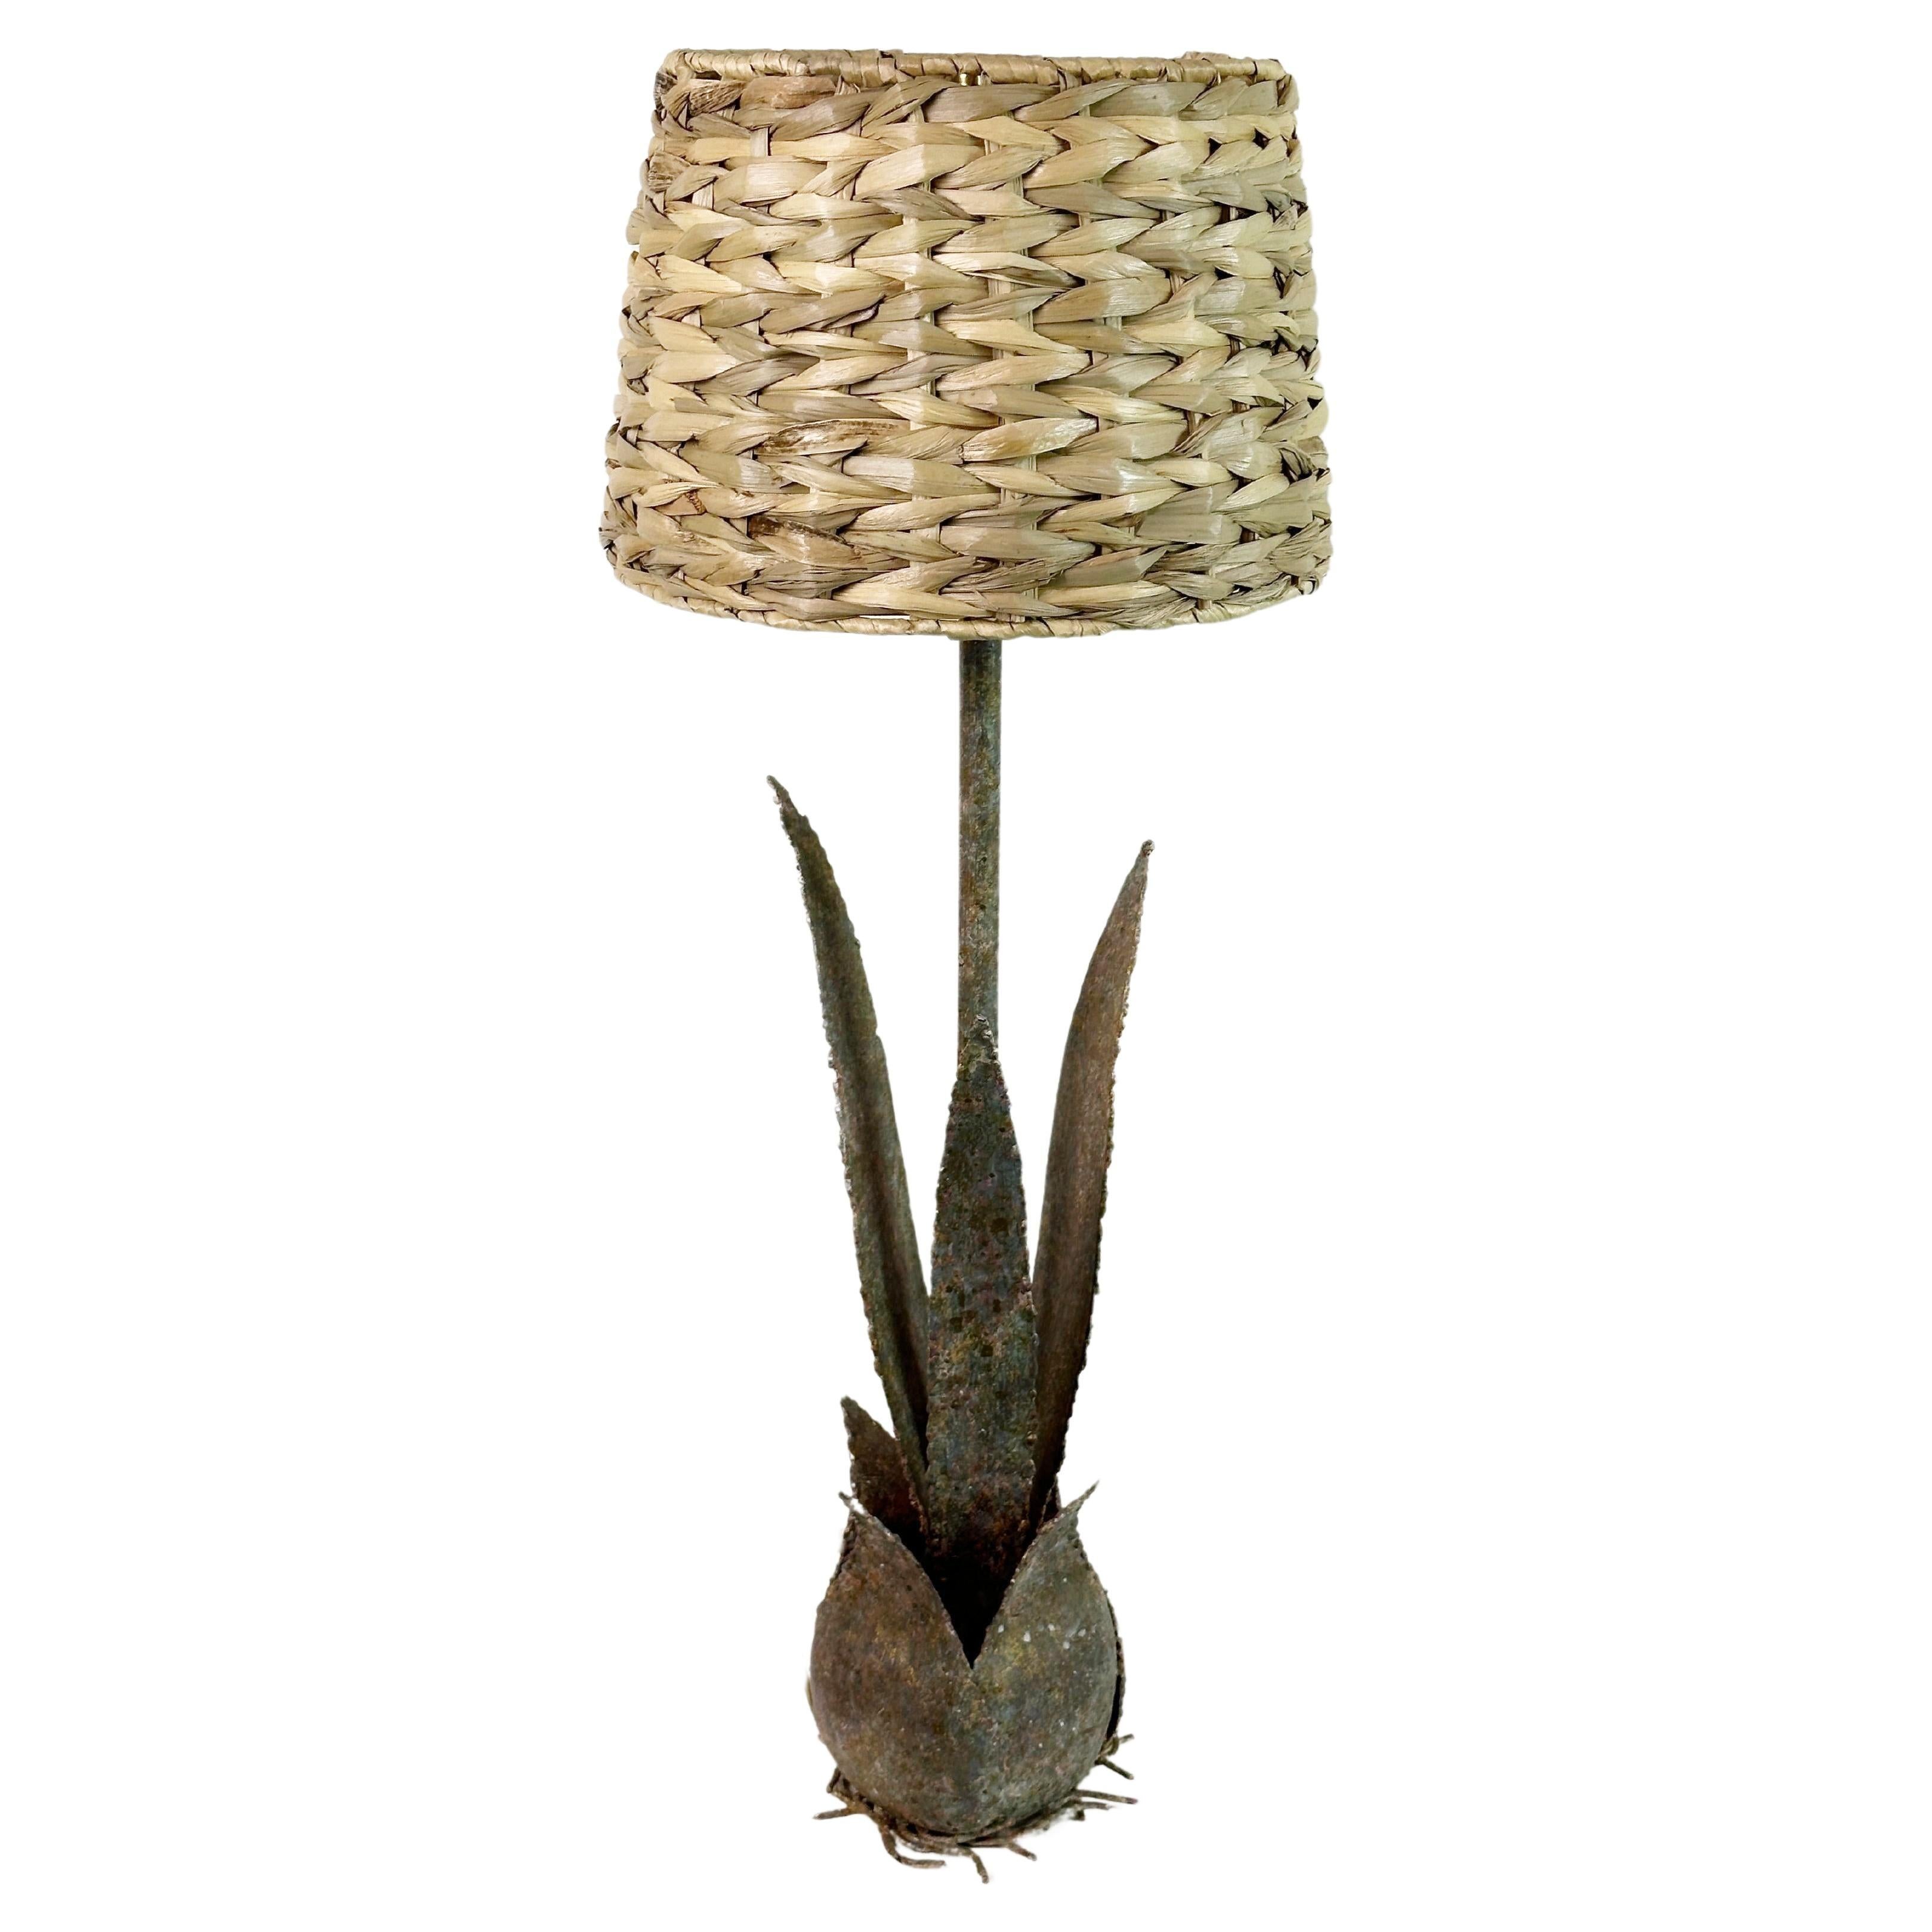 Cette paire de lampes de table cactus en métal met en valeur le charme du style Hollywood Regency avec une touche contemporaine.

Chaque lampe est fabriquée en métal patiné, ce qui garantit sa durabilité et sa longévité. Les trois feuilles de cactus